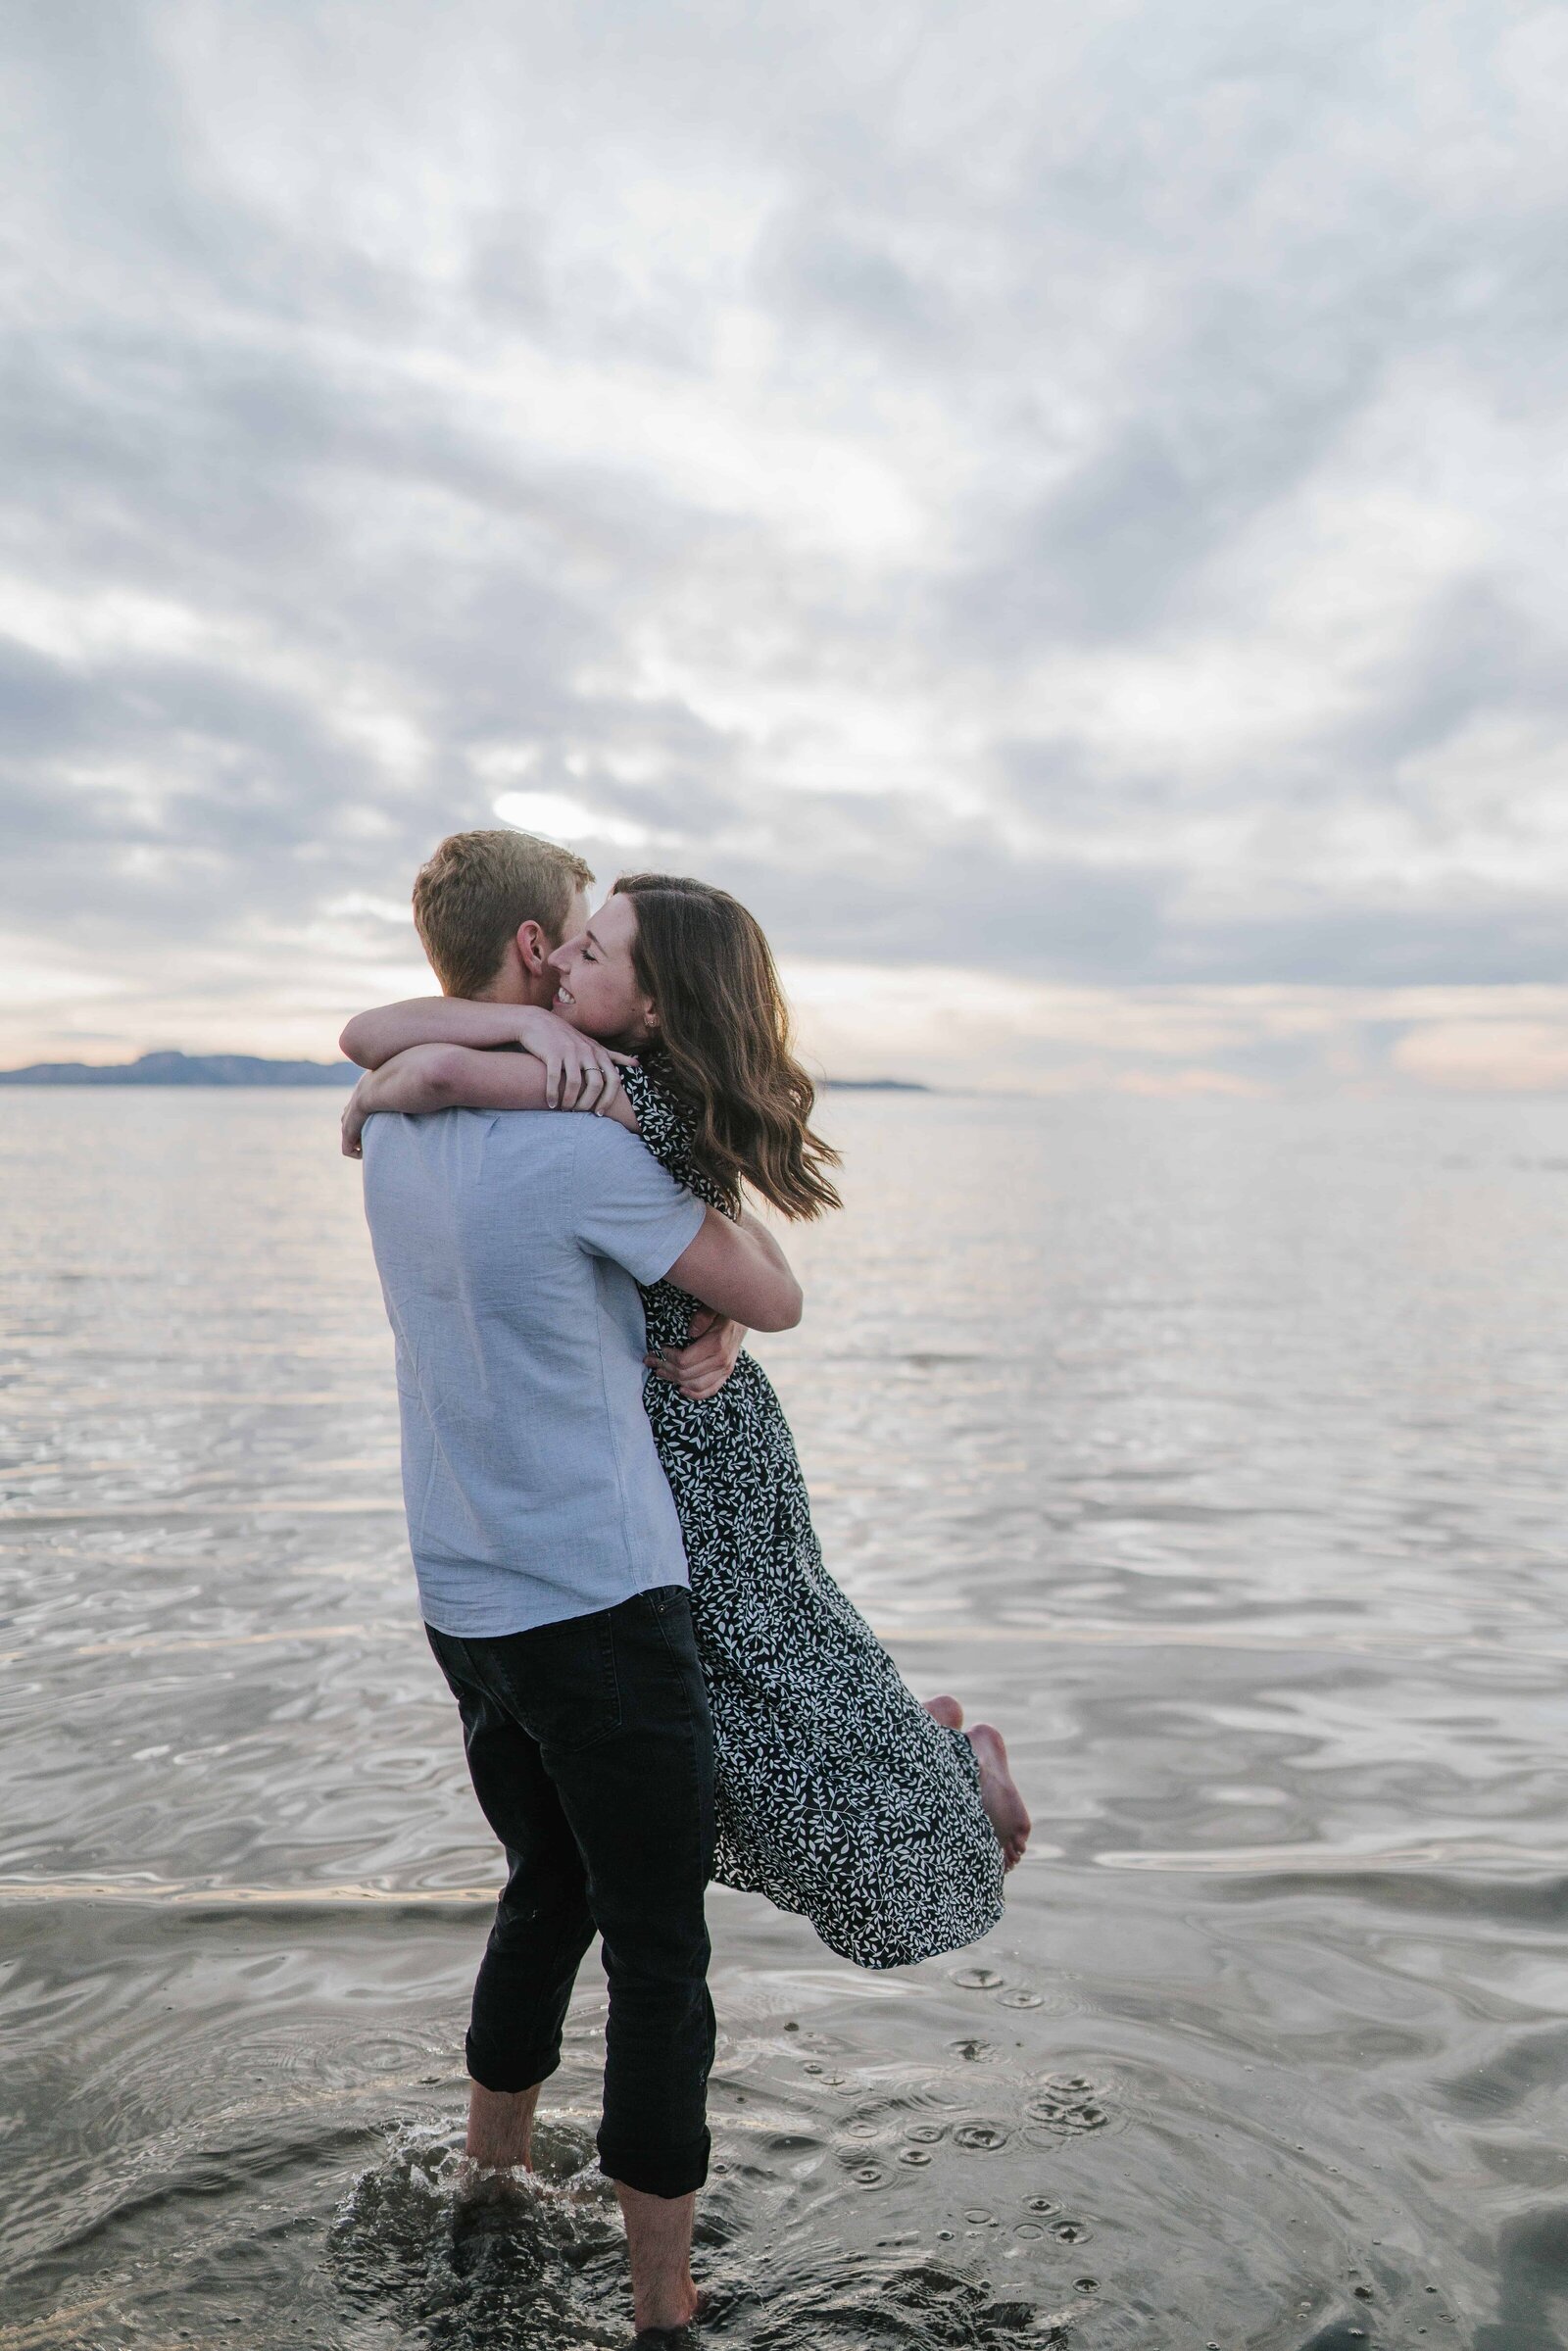 Big Sur wedding photographer captures beach engagements while couple hugs